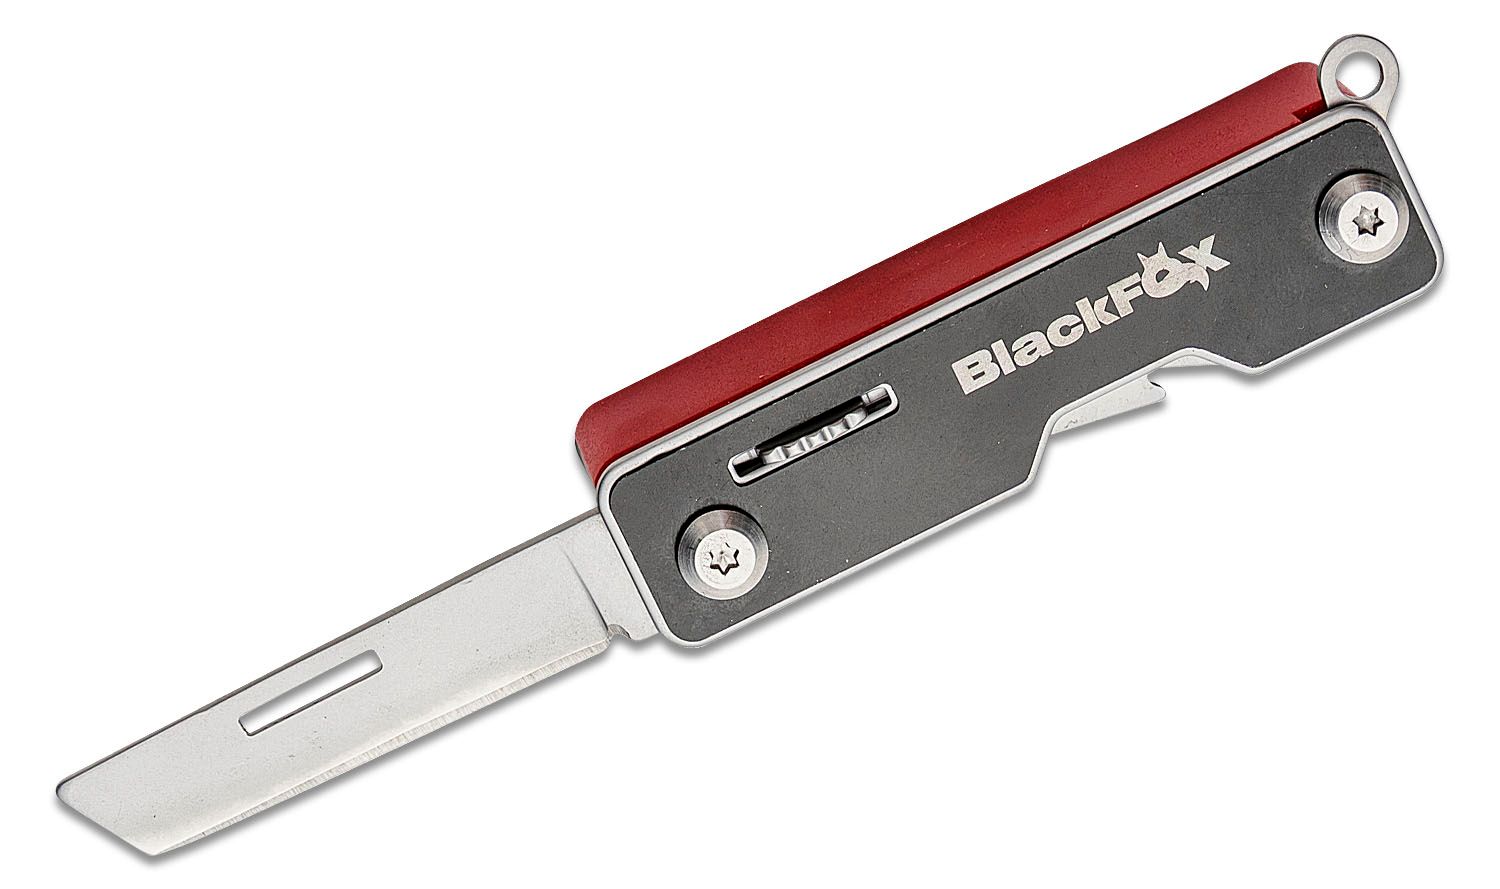 Multifunction knives: Black Fox Pocket Boss multi-tool